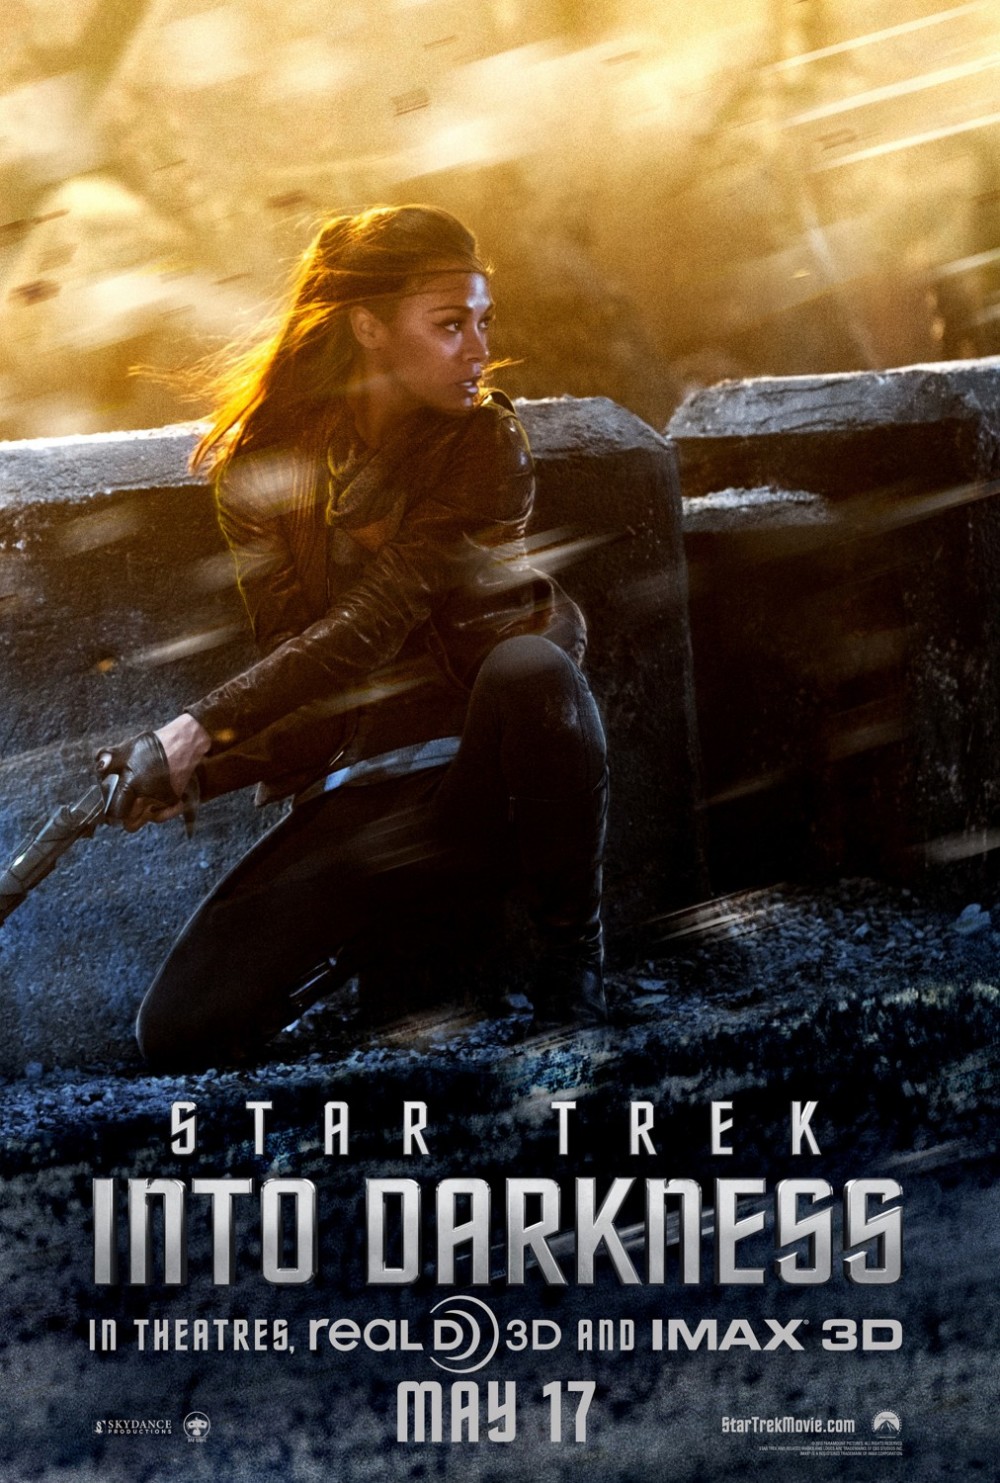 Volledig nieuwe trailer & vier posters 'Star Trek Into Darkness'